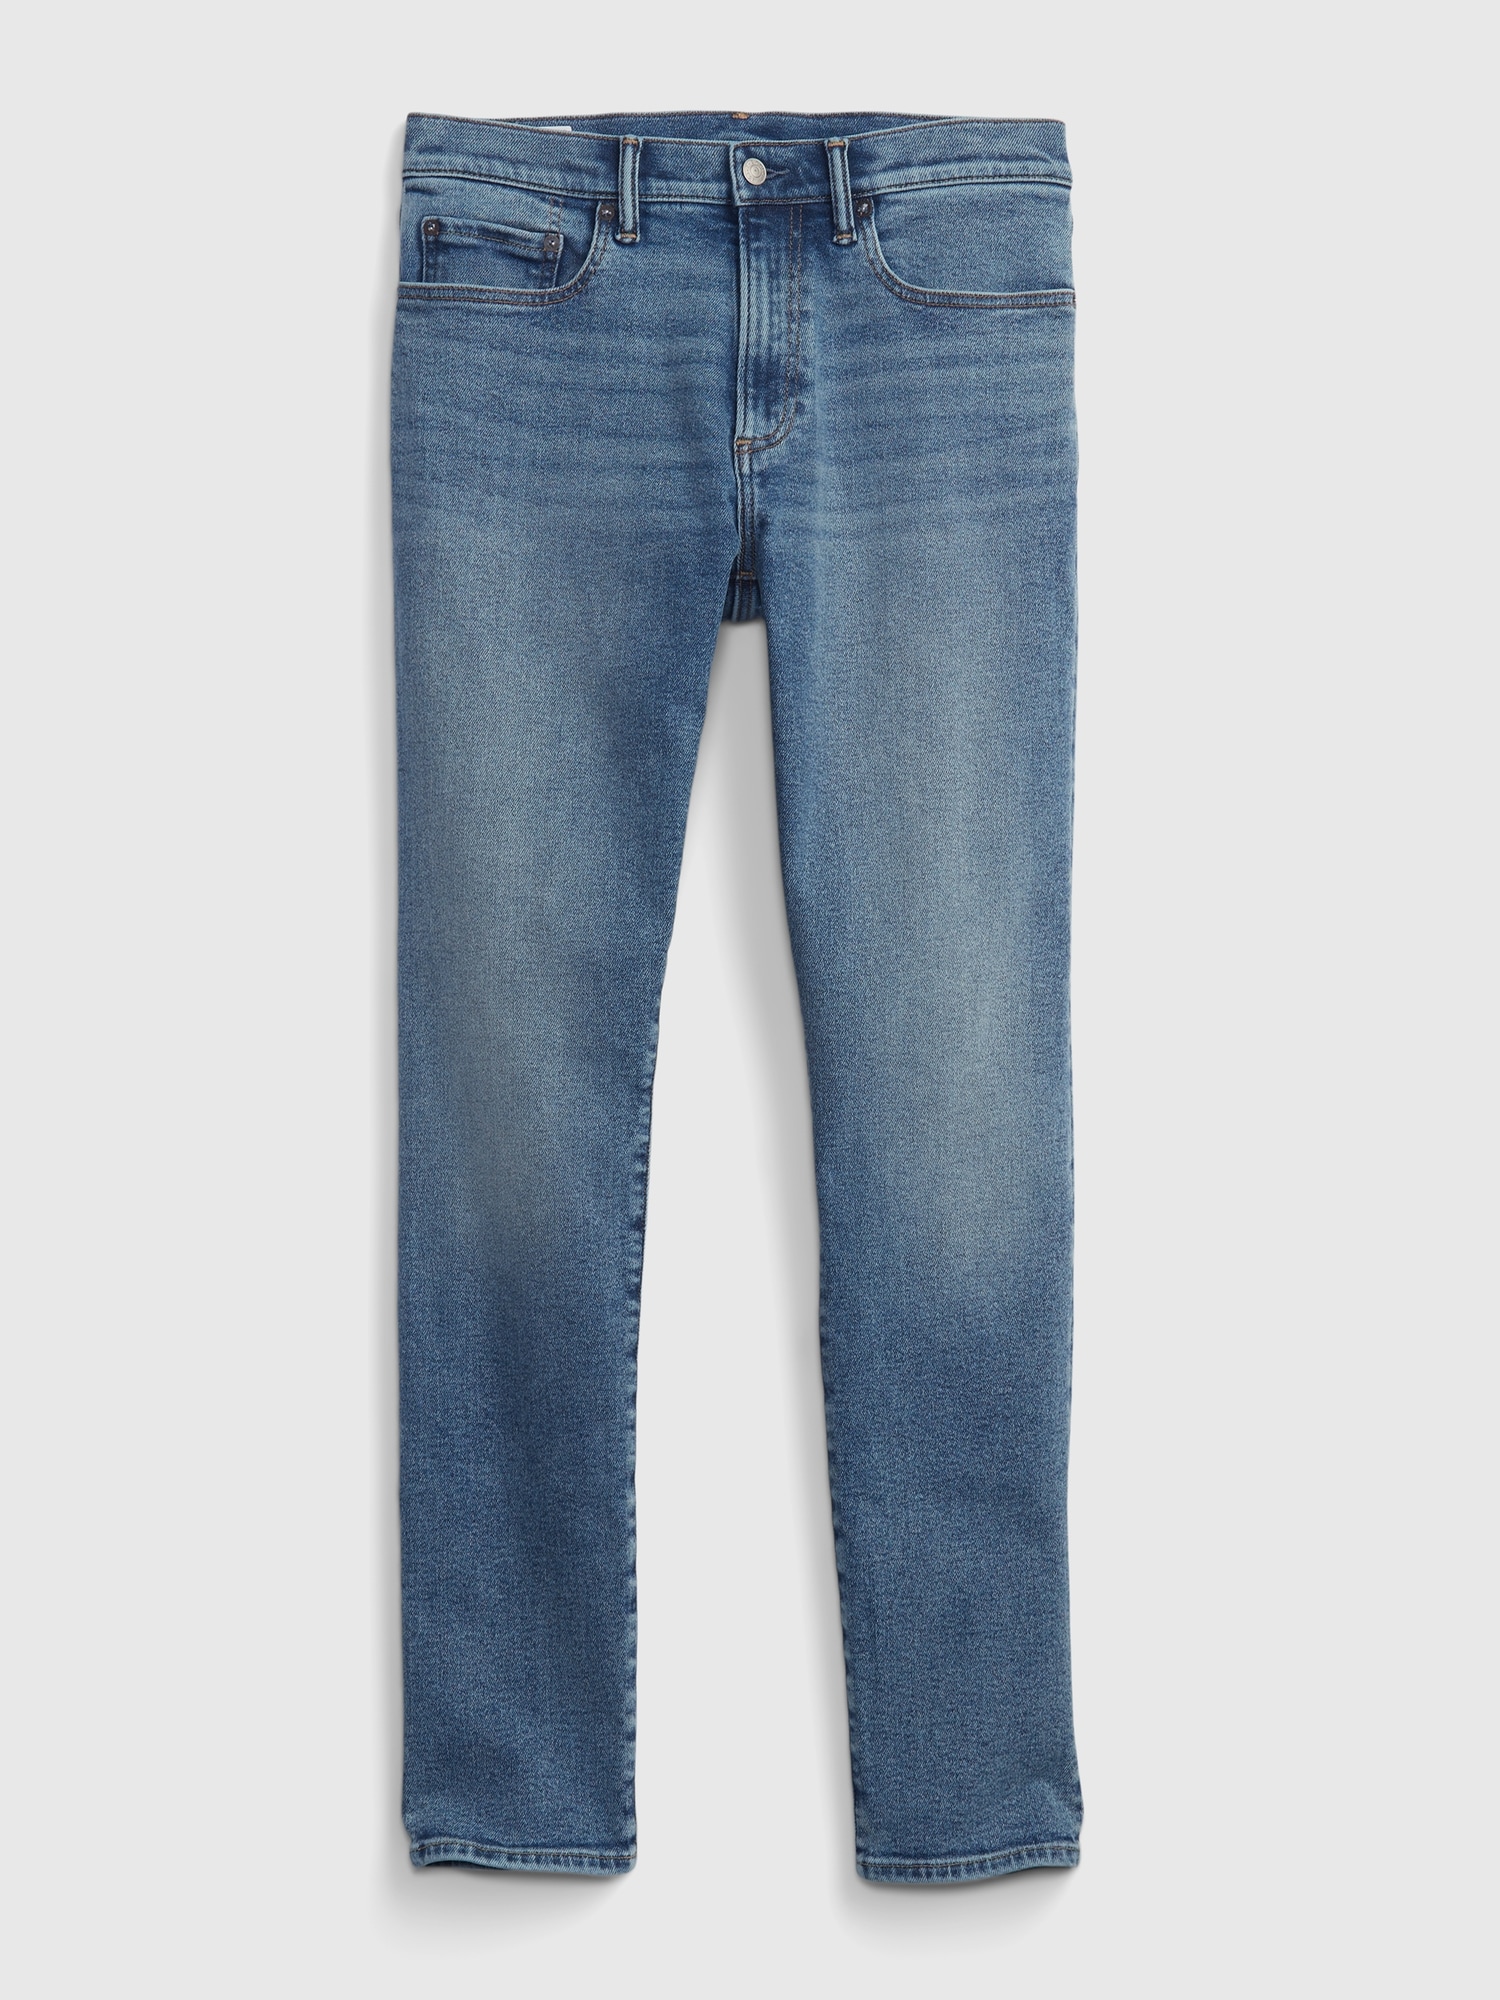 GAP, Jeans, Gap Jeans Mens Size 32 X 32